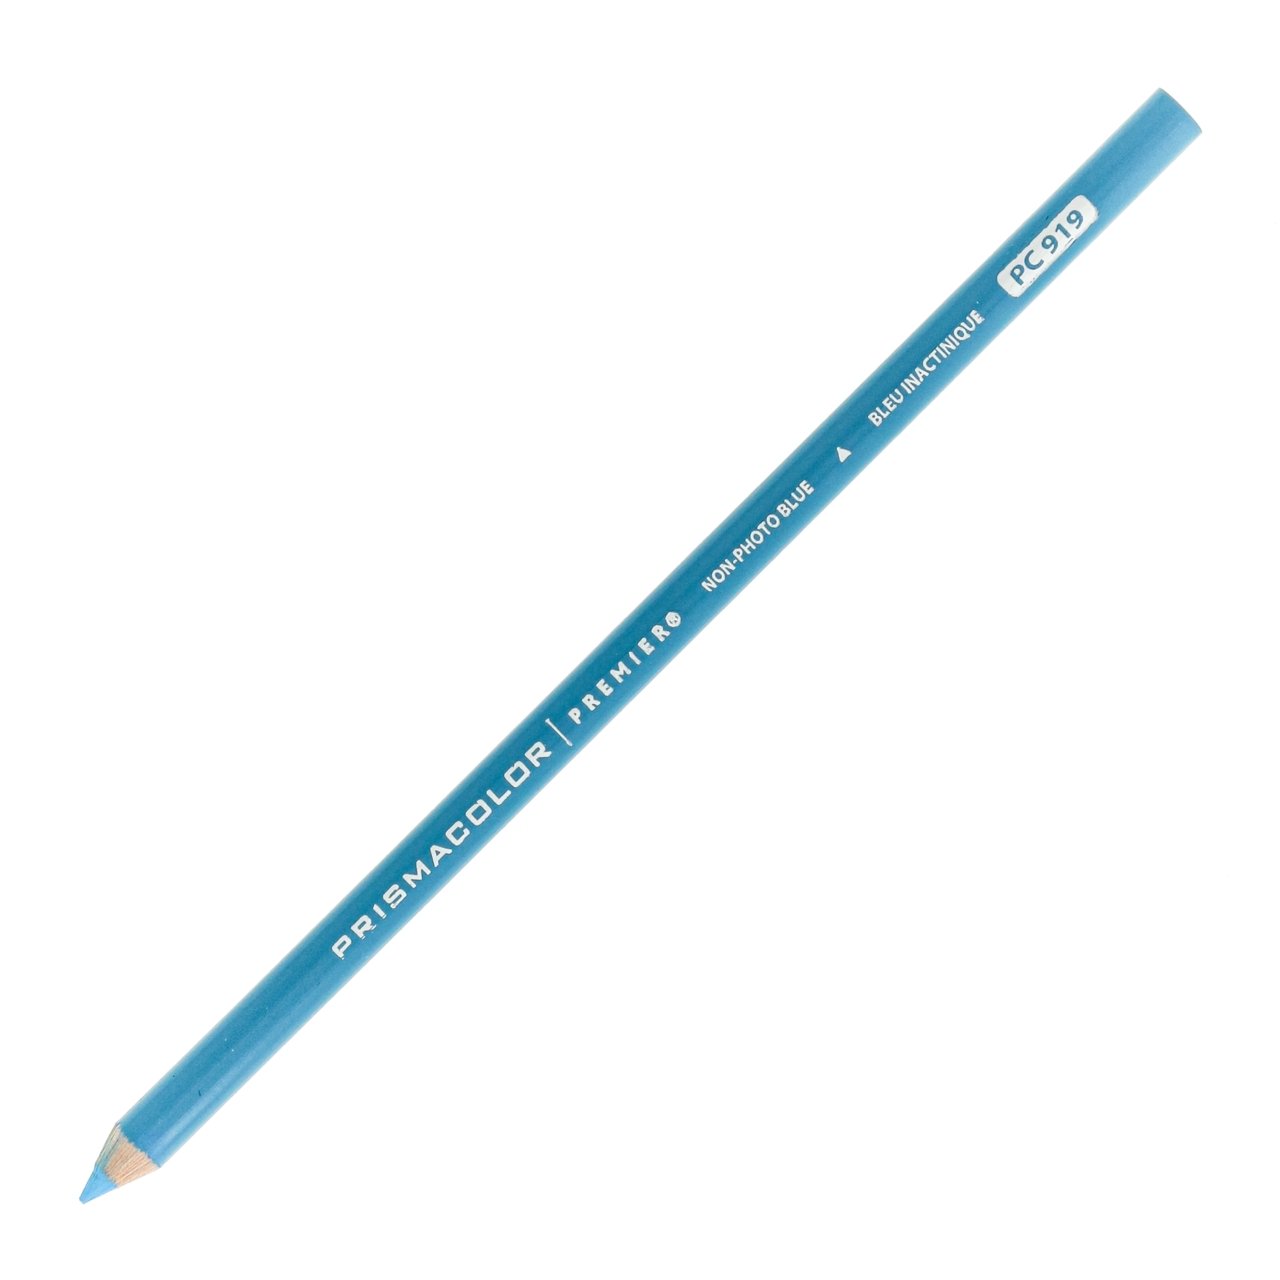 Prismacolor Premier Colored Pencil Light Cerulean Blue